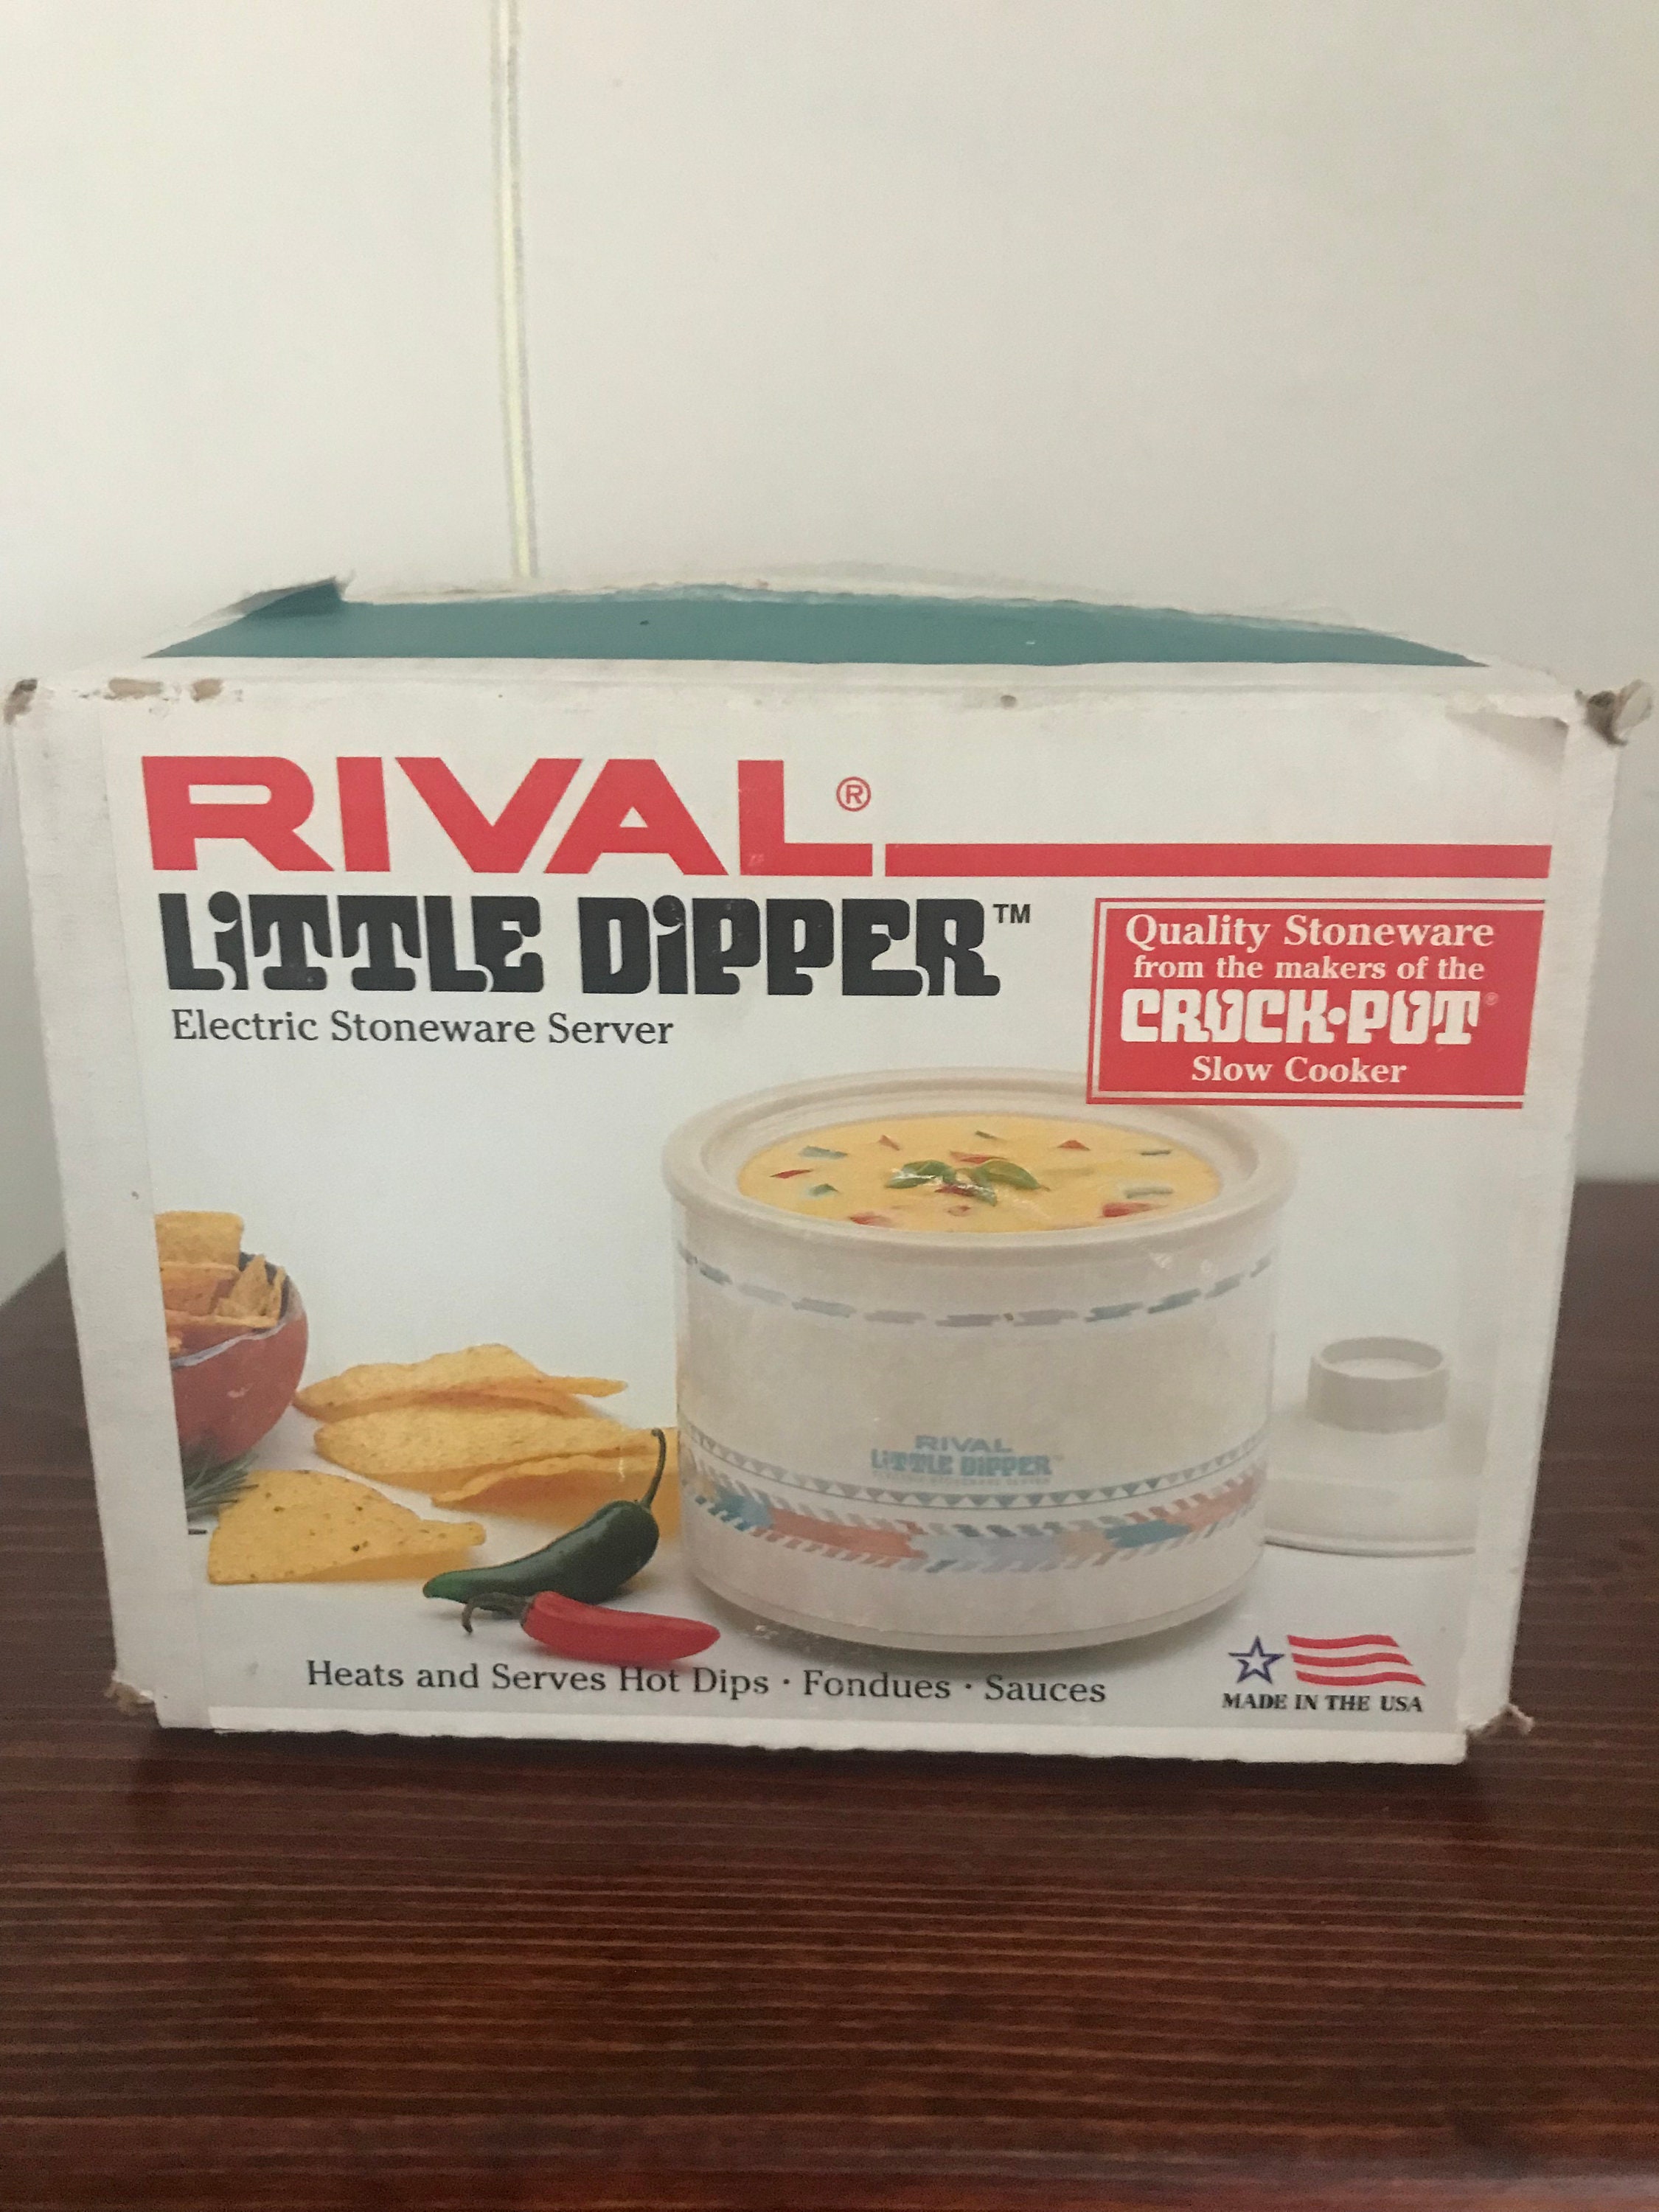 Crockpot™ Little Dipper